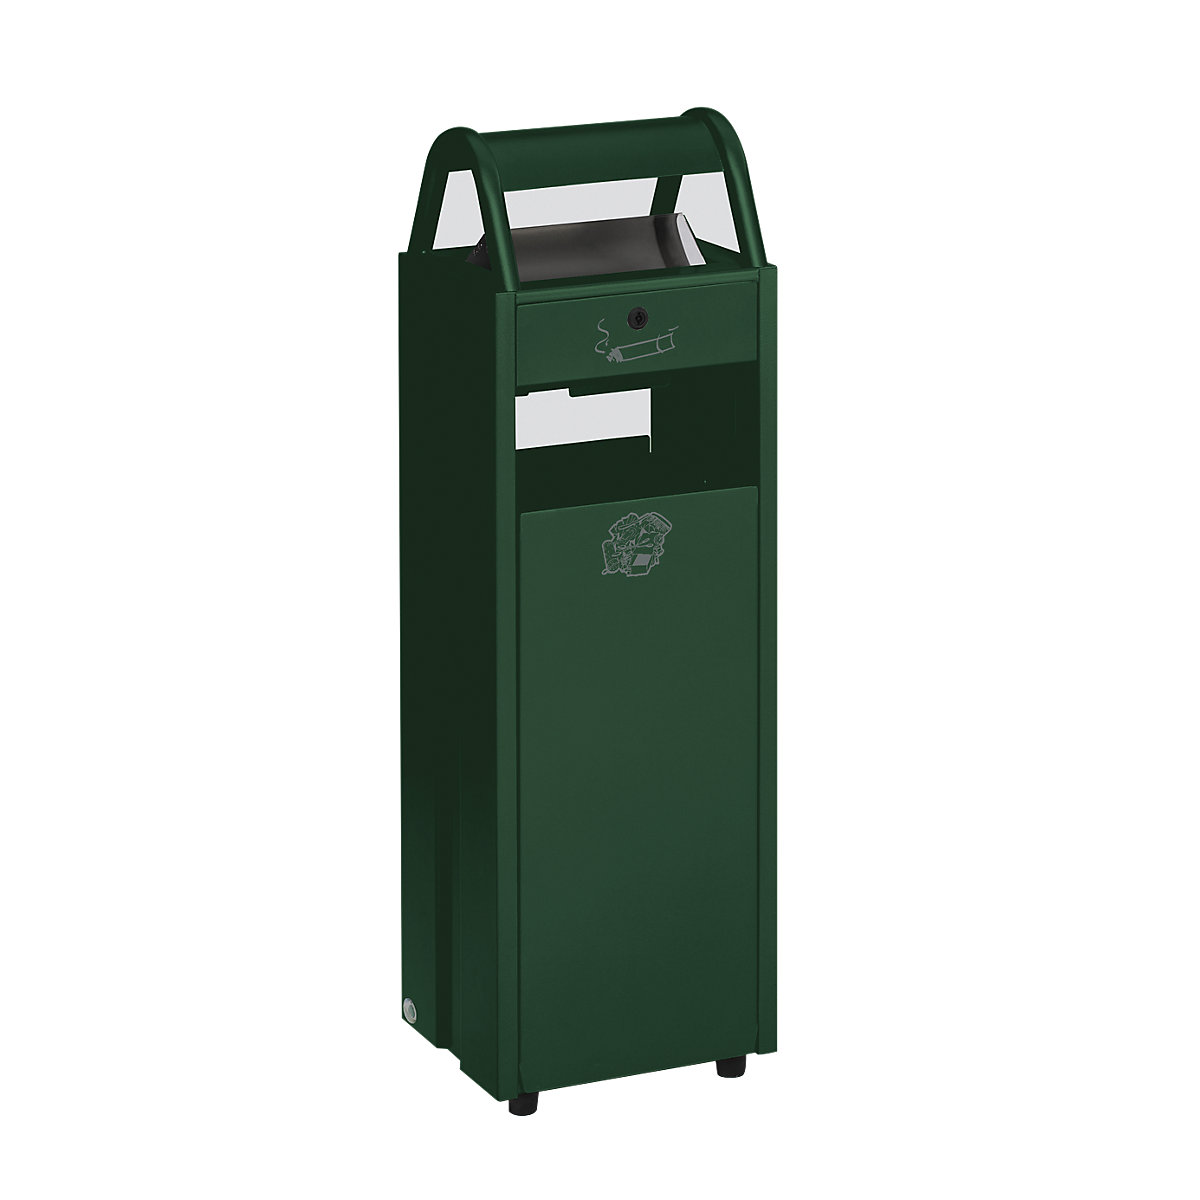 VAR Abfallbehälter mit Ascher, Volumen 35 l, BxHxT 300 x 960 x 250 mm, grün RAL 6005